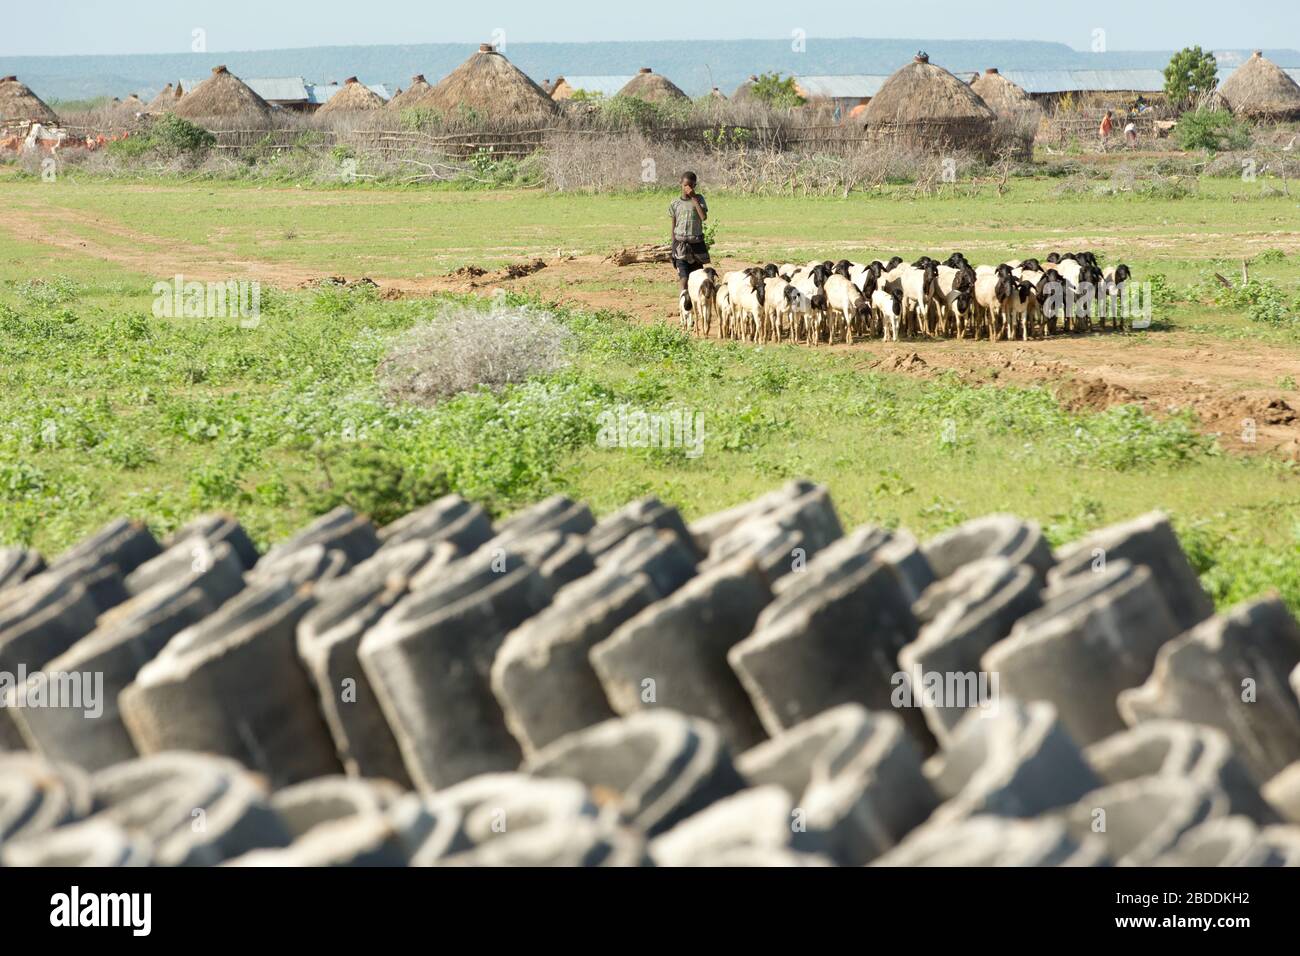 14.11.2019, Gode, région somalienne, Ethiopie - tuyaux d'eau en béton empilés pour l'approvisionnement en eau potable. En arrière-plan le village Burferedo et un garçon Banque D'Images